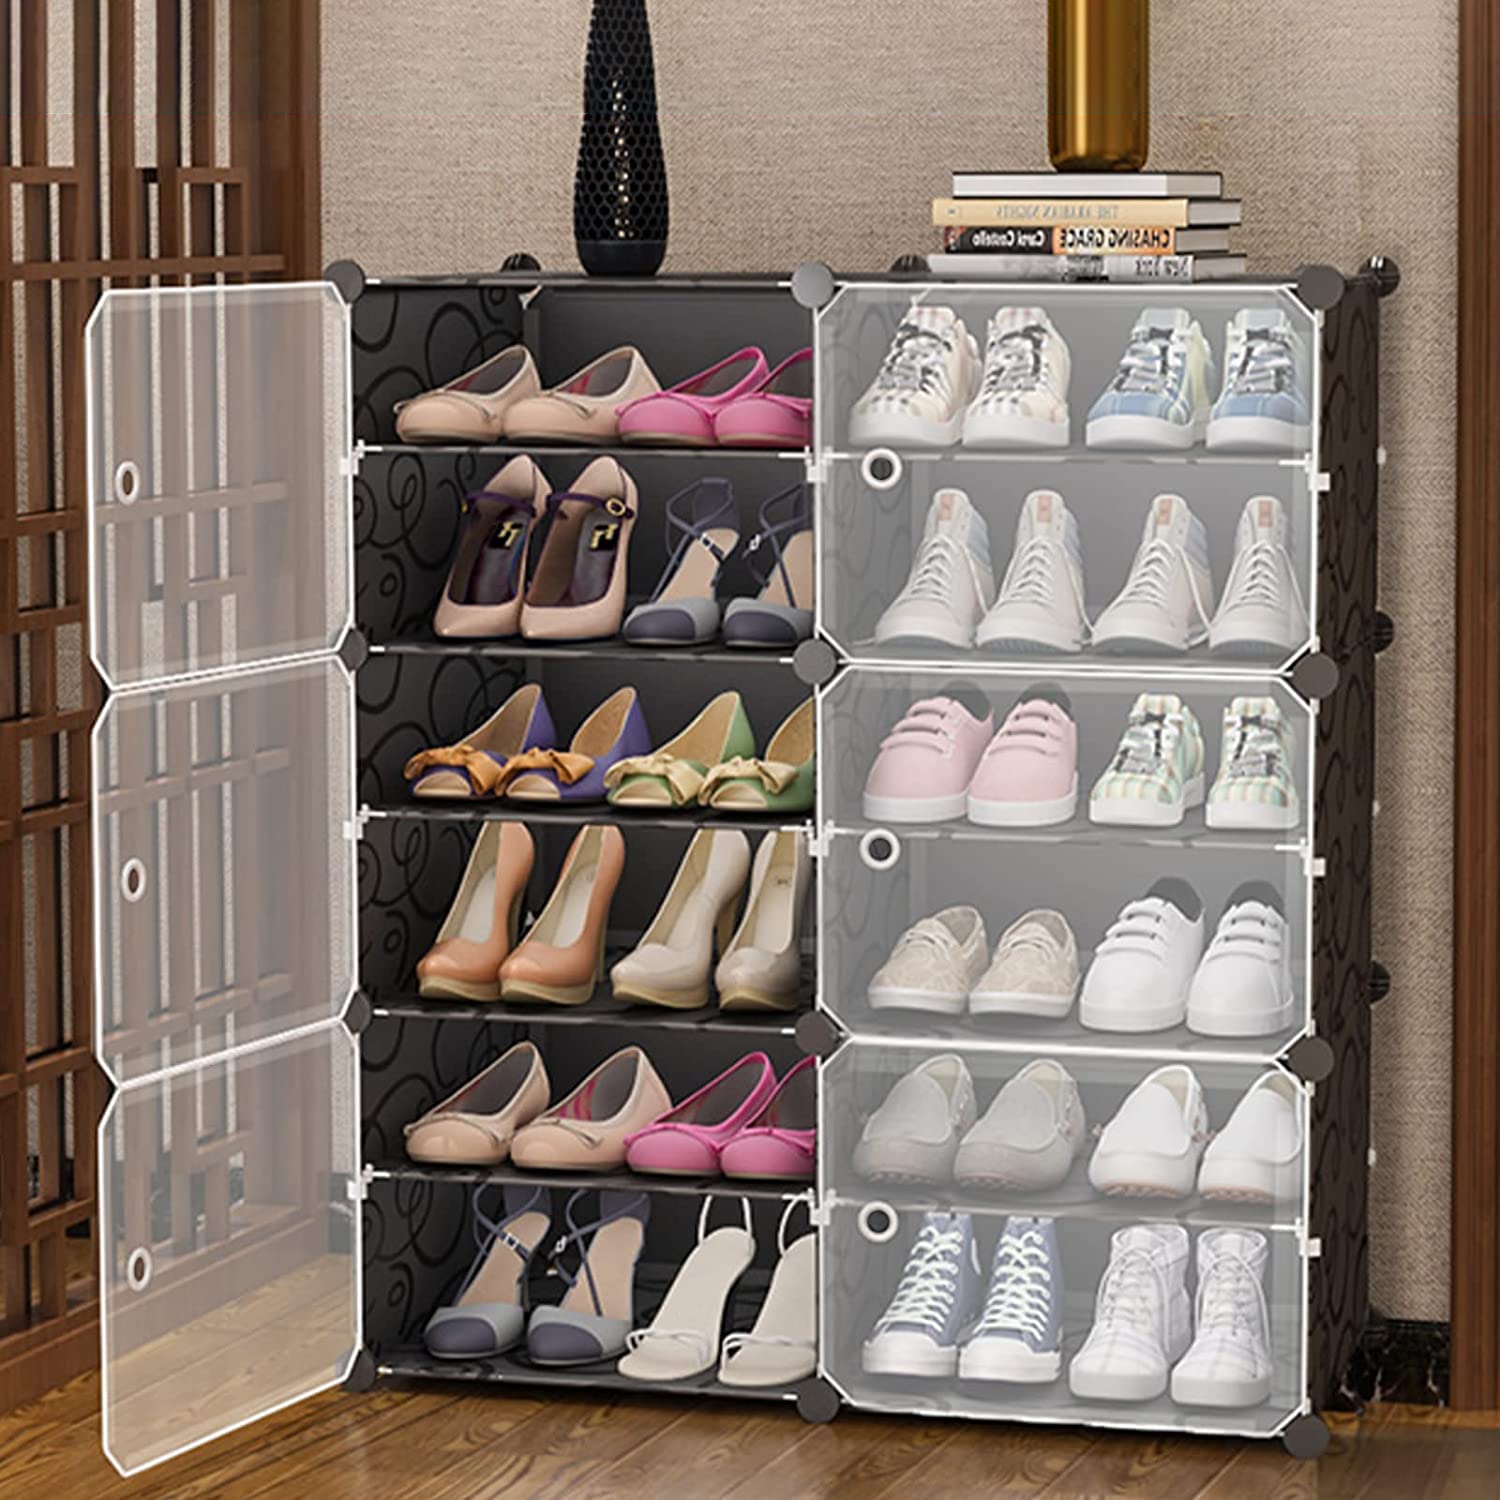 DIY Boot Storage Cabinet